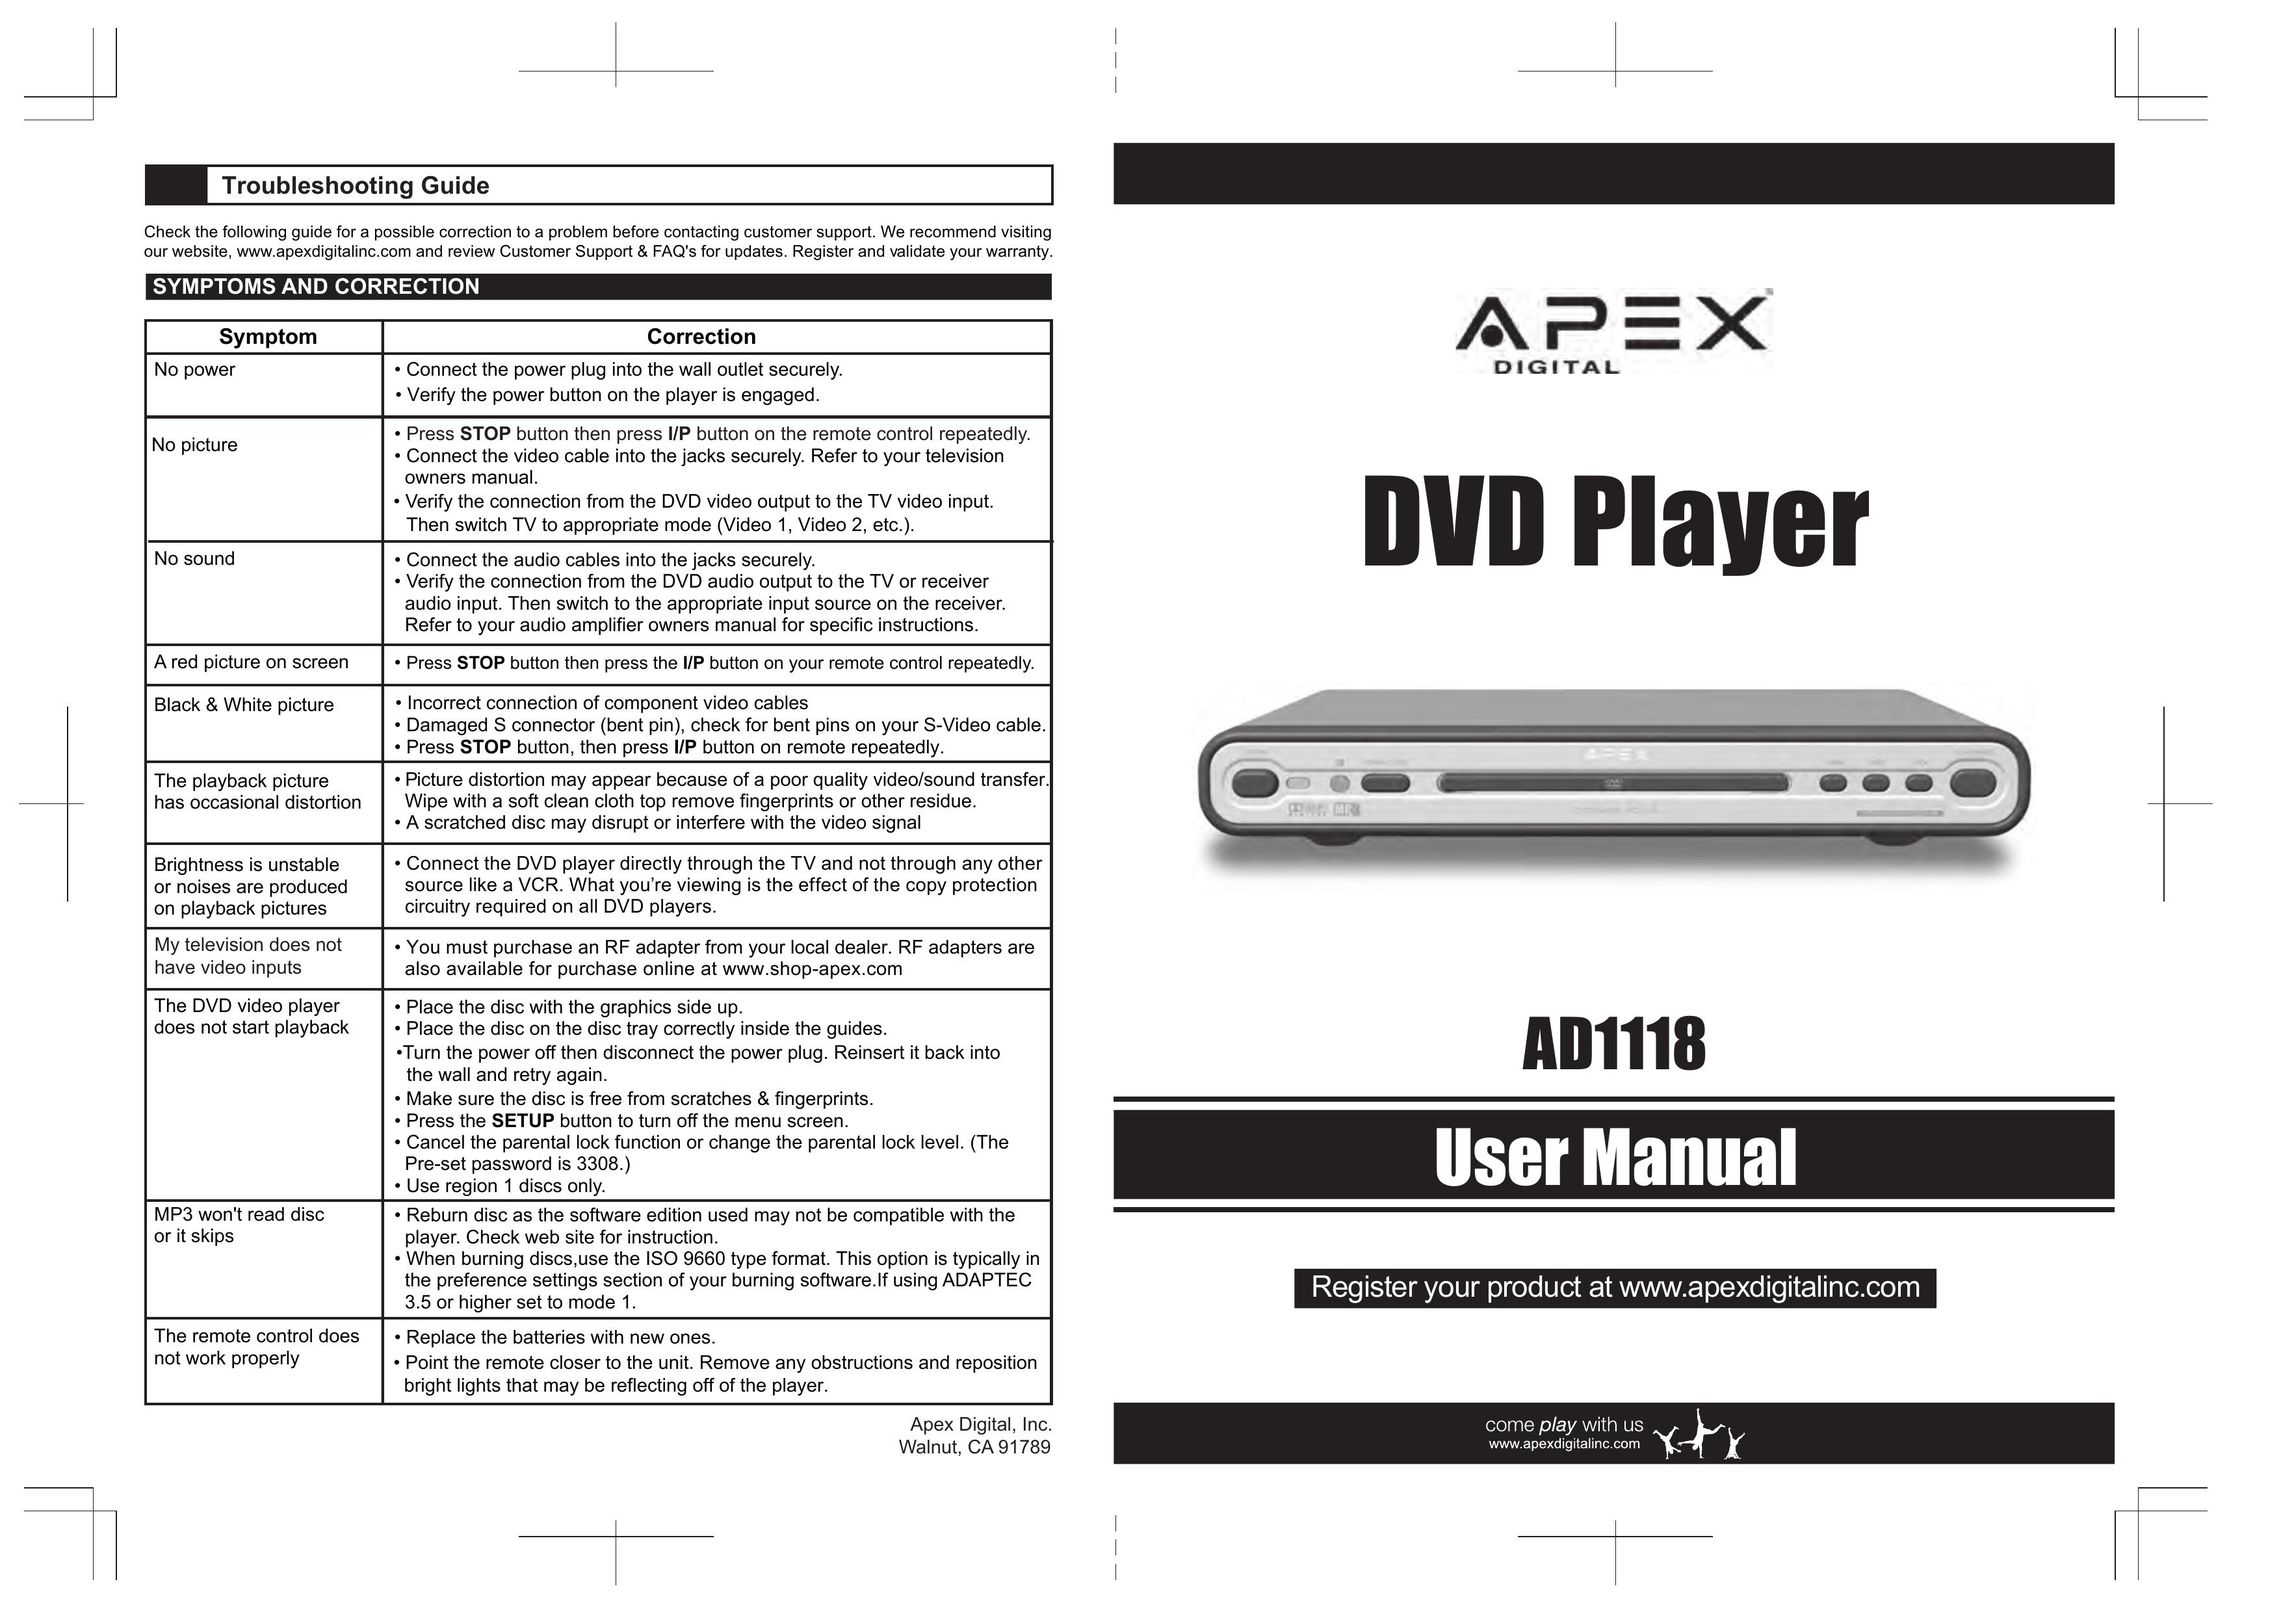 Apex Digital AD1118 DVD Player User Manual